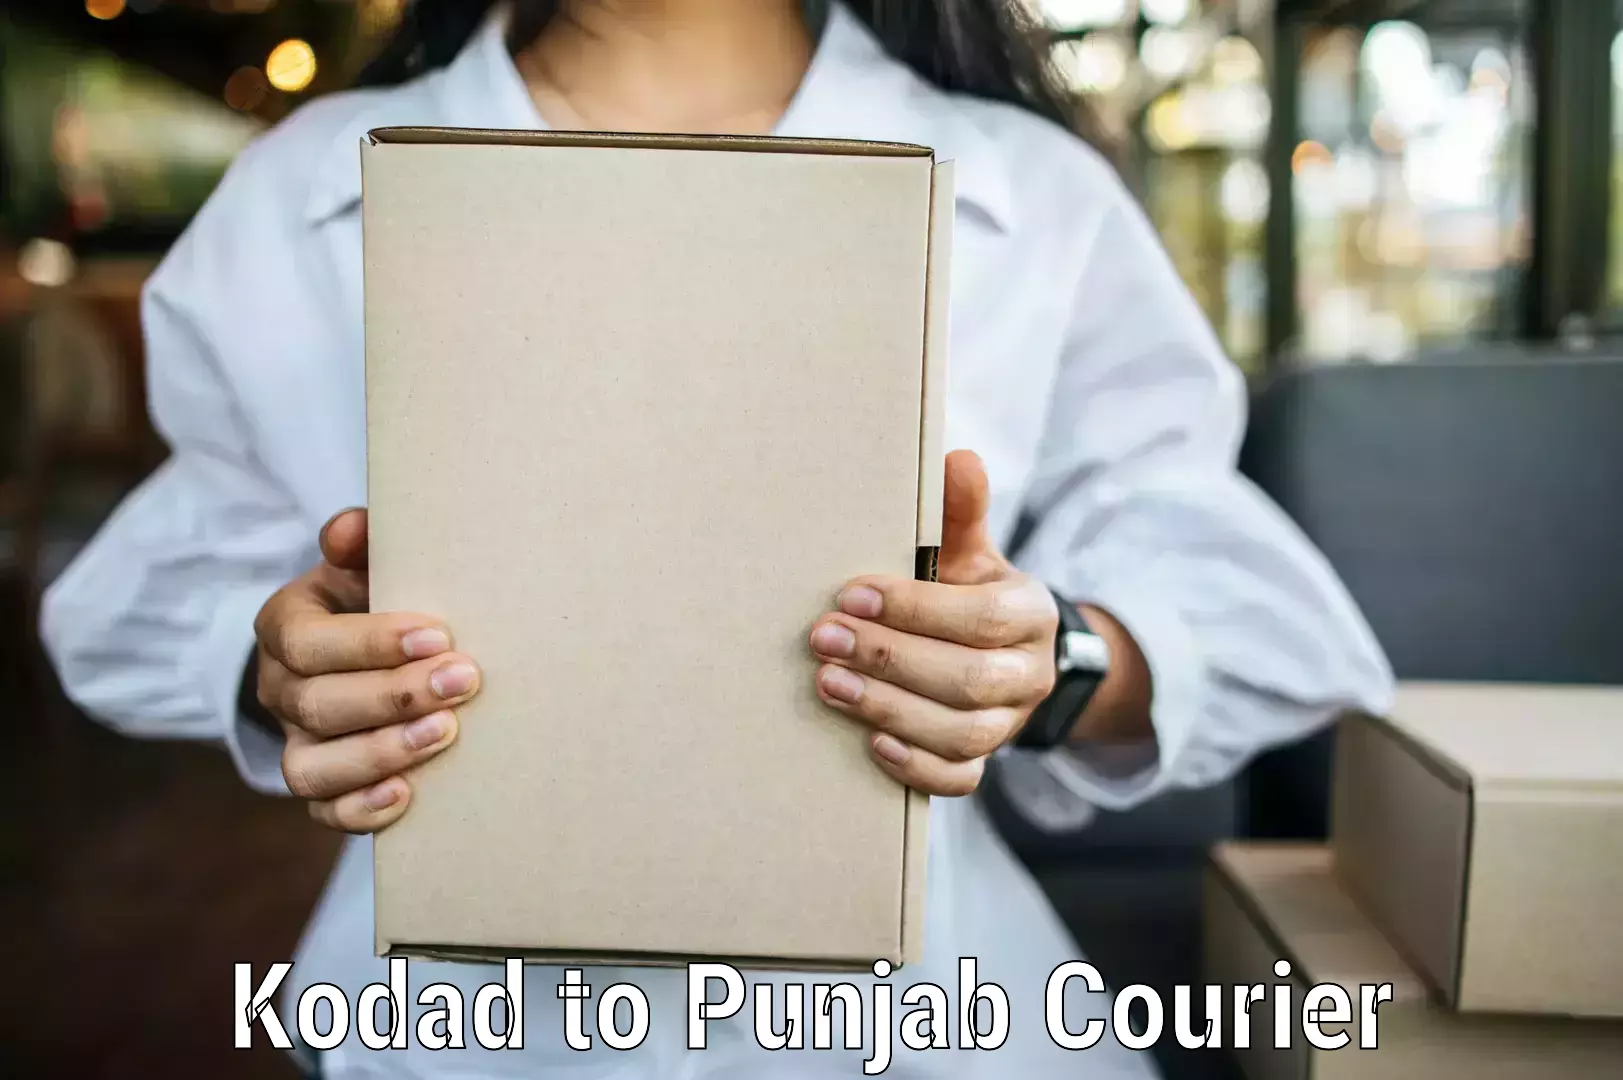 Easy access courier services Kodad to Rupnagar